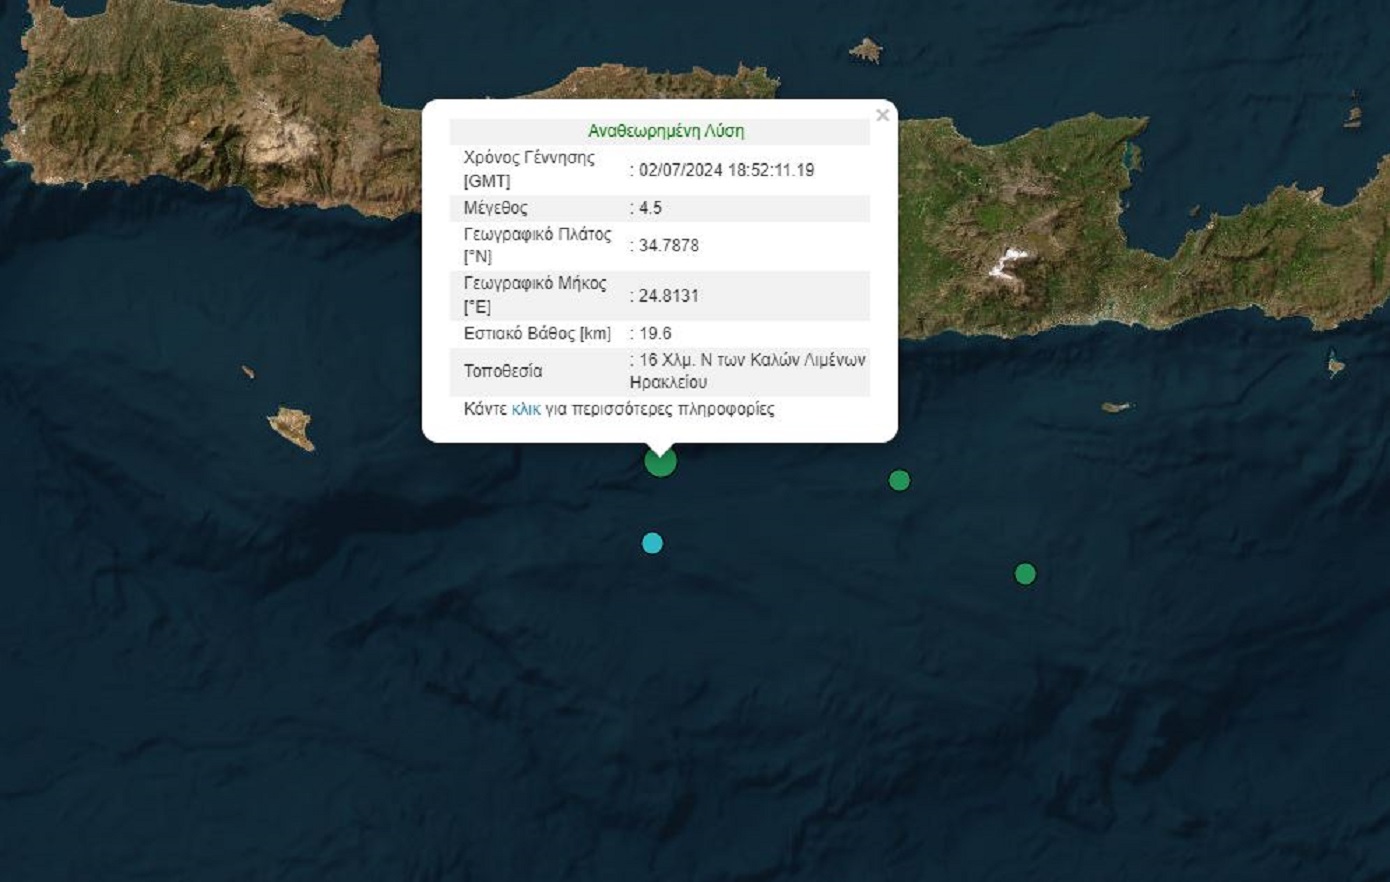 Δύο σεισμοί 4,5 και 4,6 Ρίχτερ μέσα σε λίγη ώρα νότια της Κρήτης